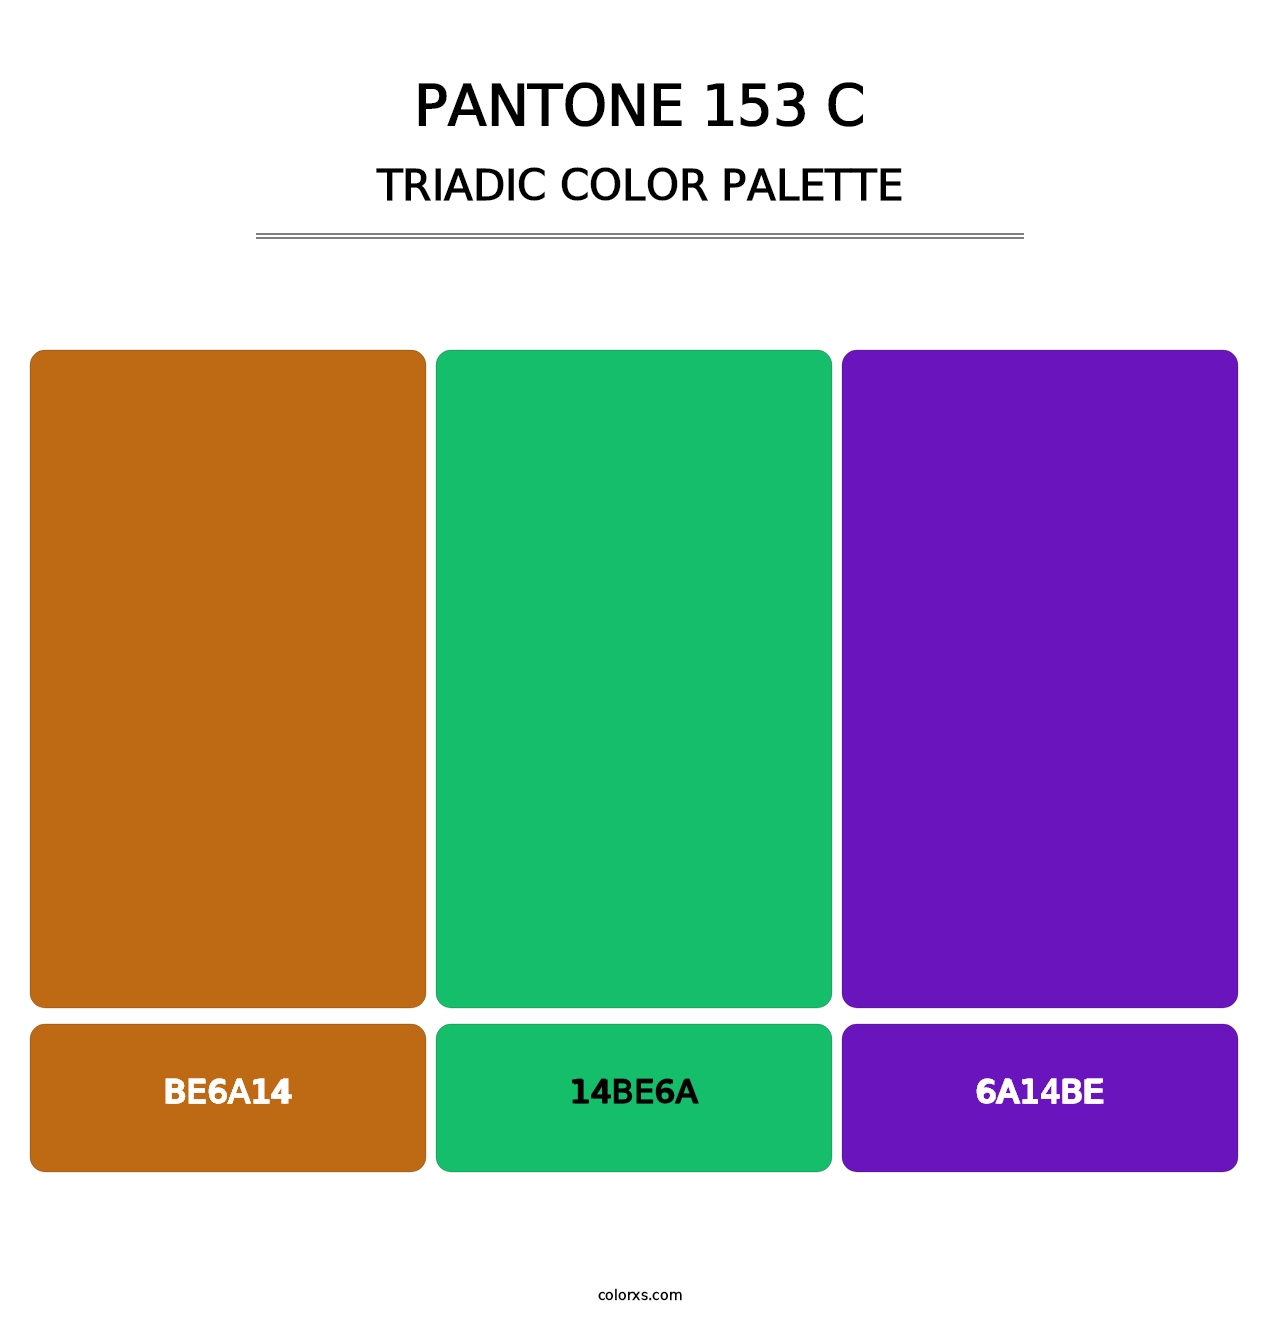 PANTONE 153 C - Triadic Color Palette